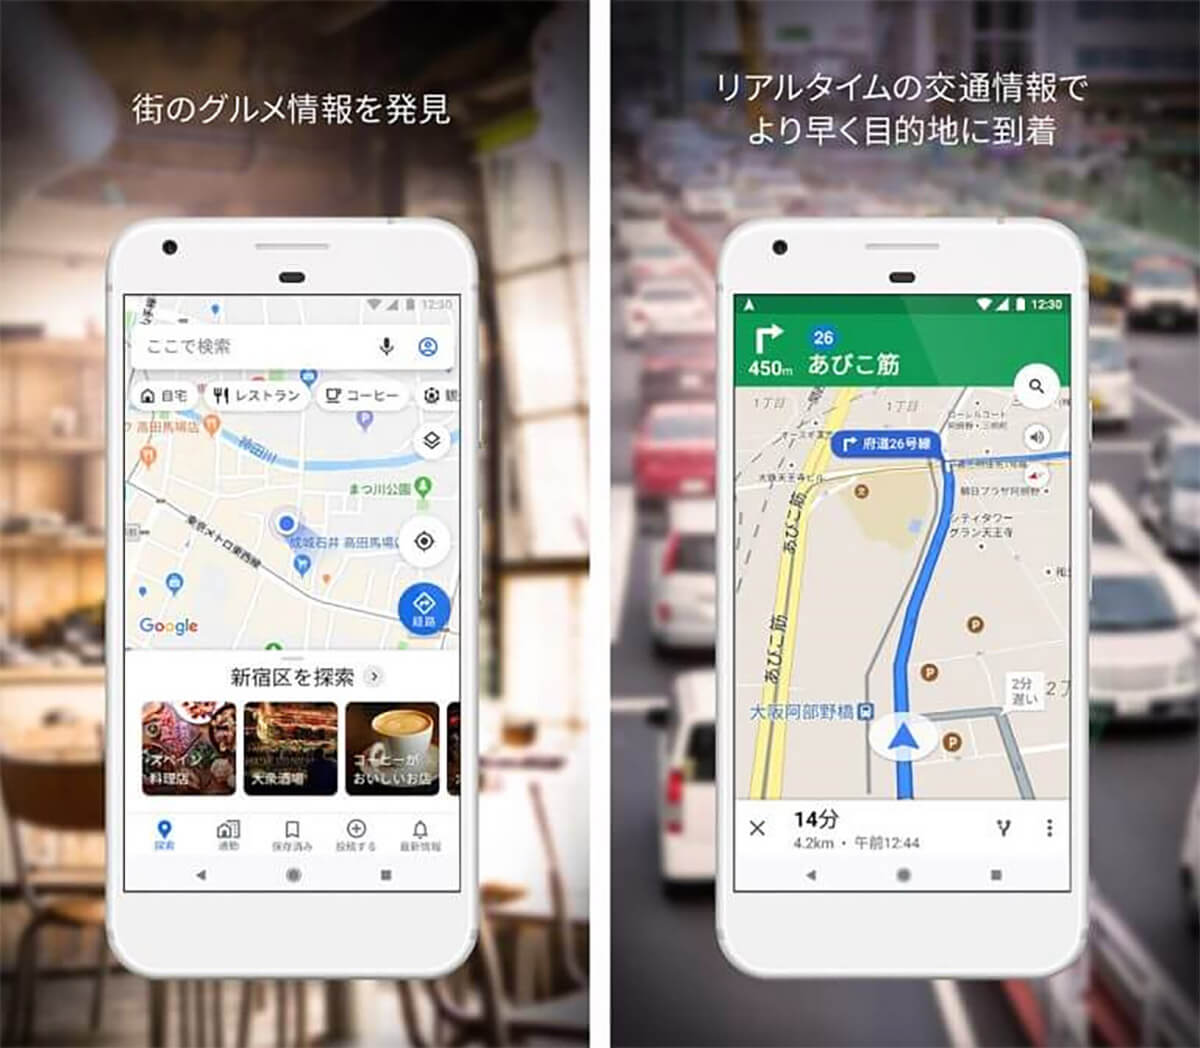 Androidスマホなら「Googleマップ」で簡単に現在地を共有できる